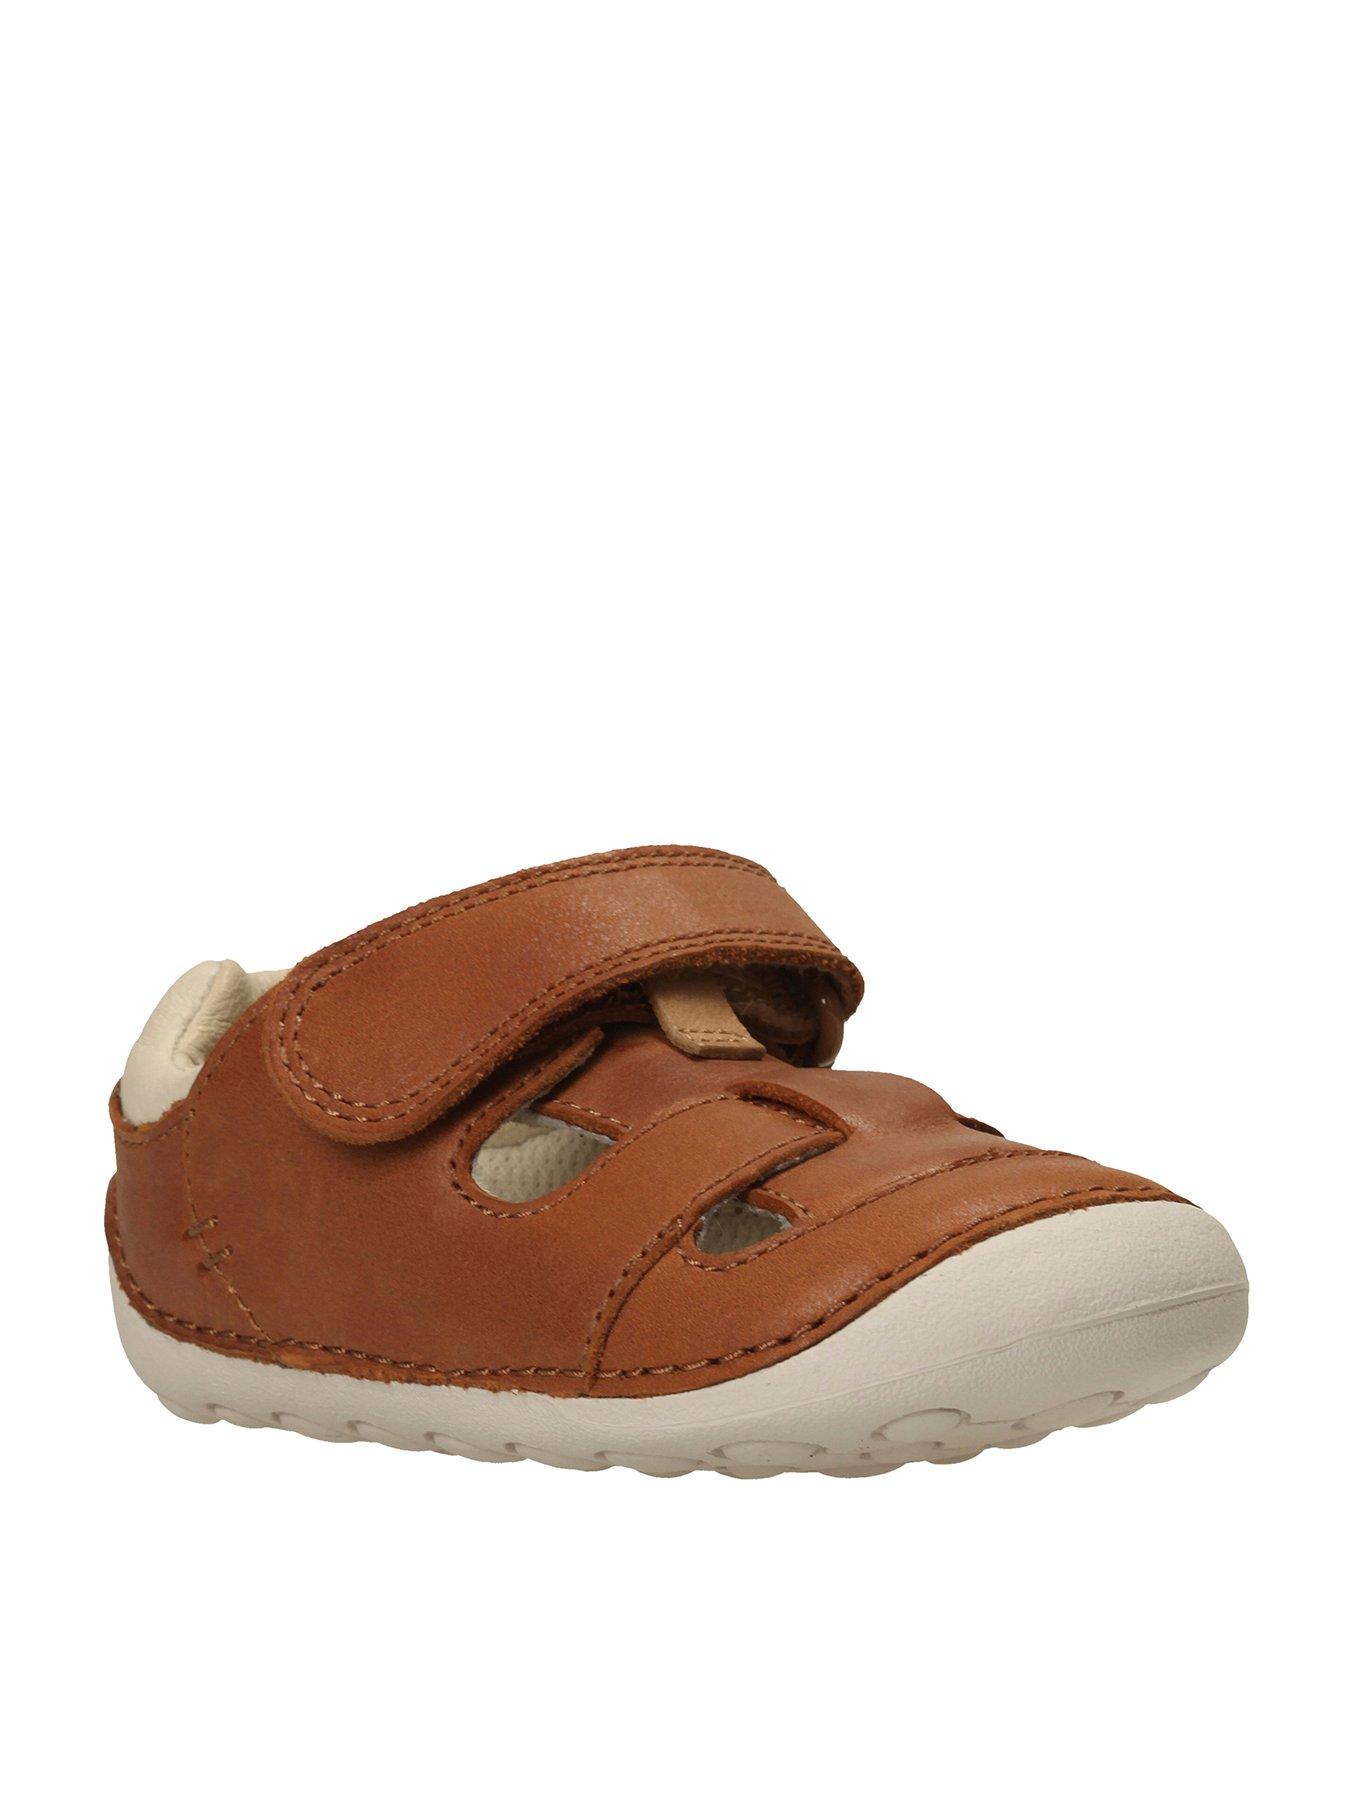 clarks baby sandals uk